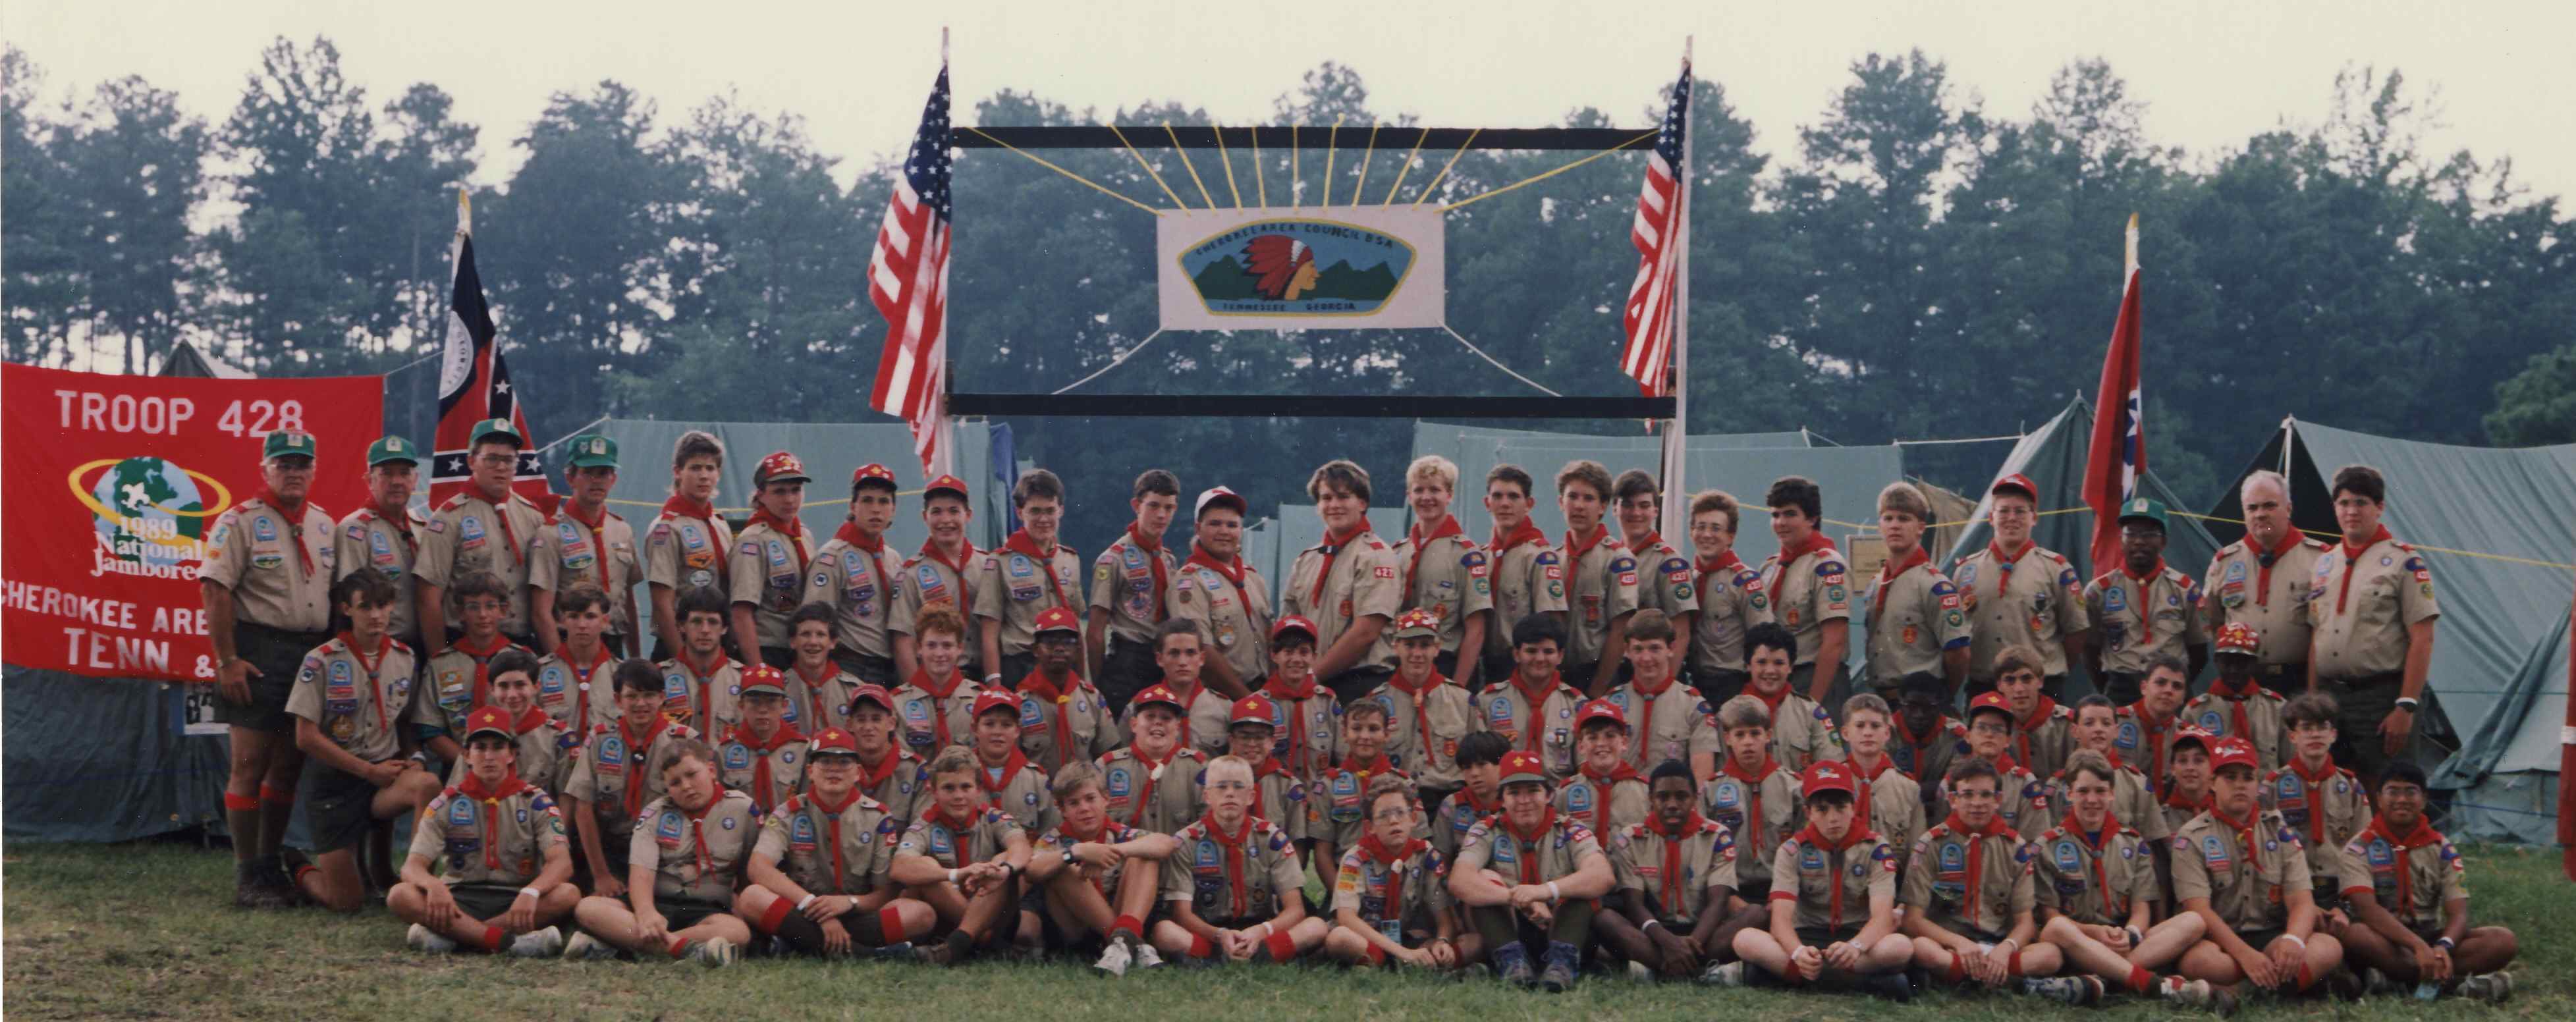 1989 BSA National Jamboree Luggage Tag 